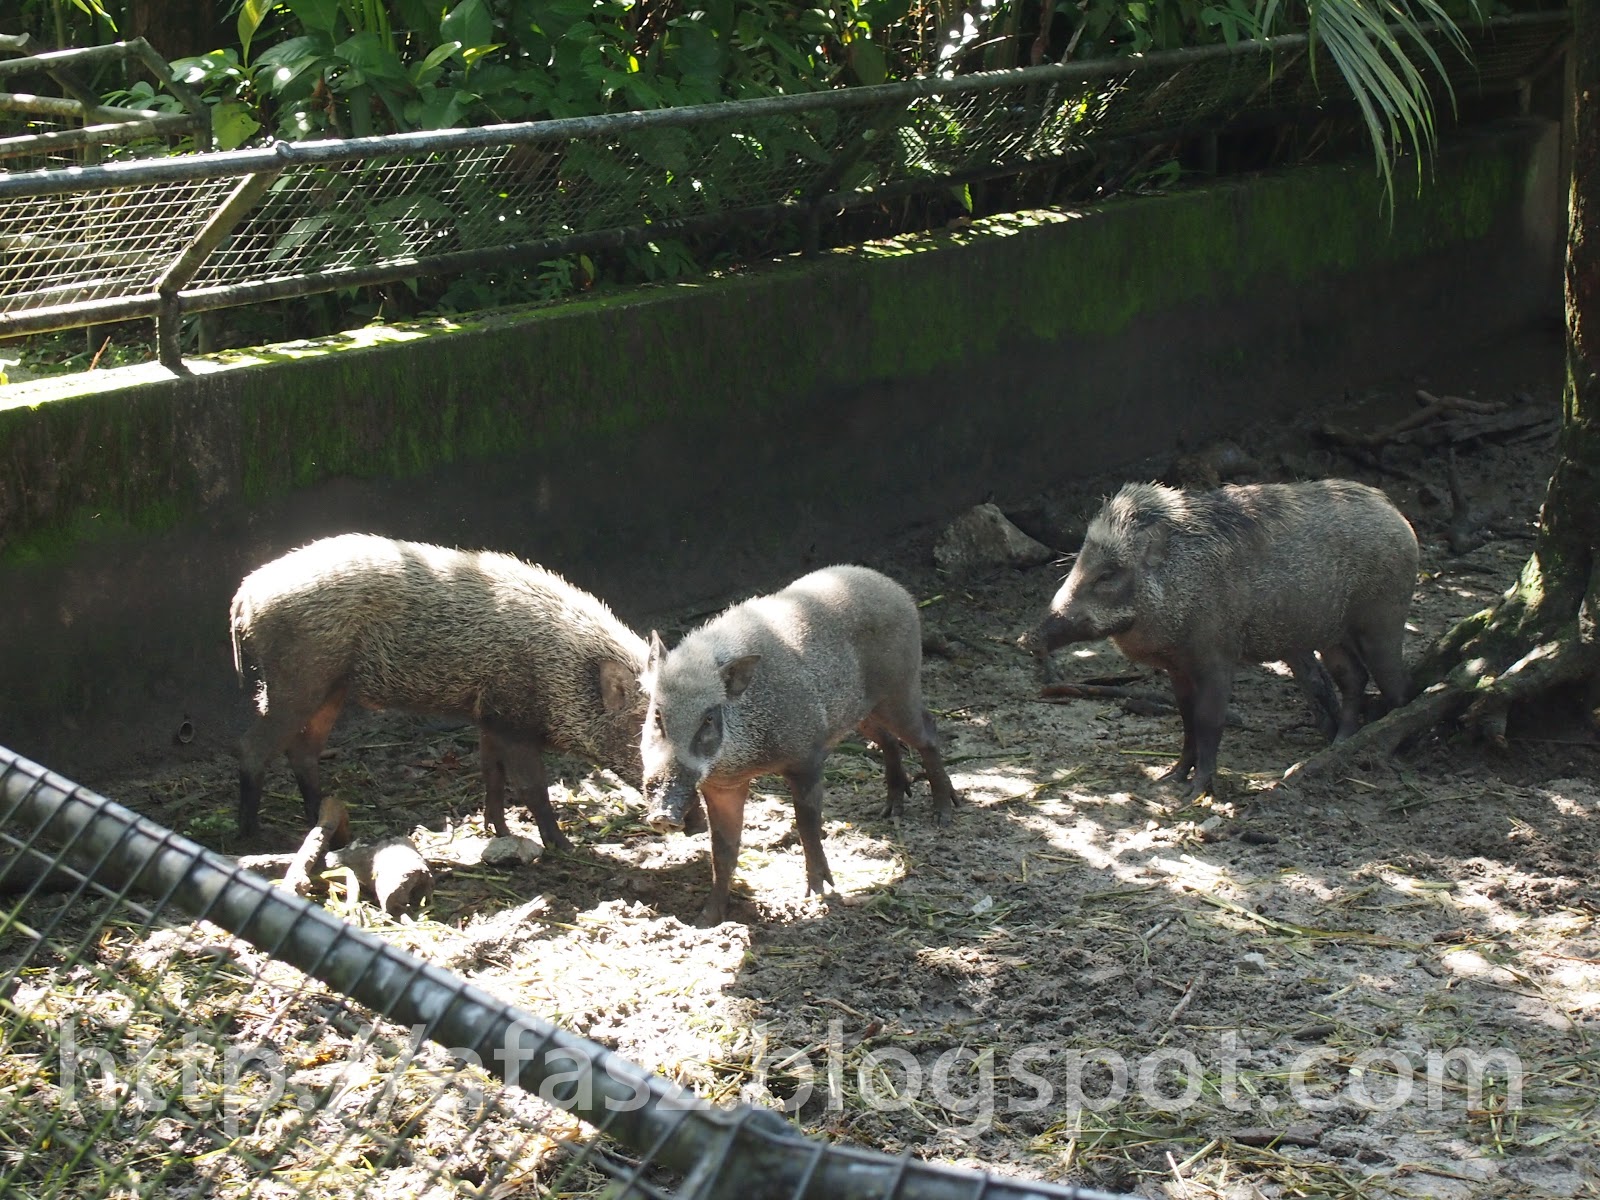 Afasz.com: Haiwan-haiwan di Zoo Taiping (Part I)